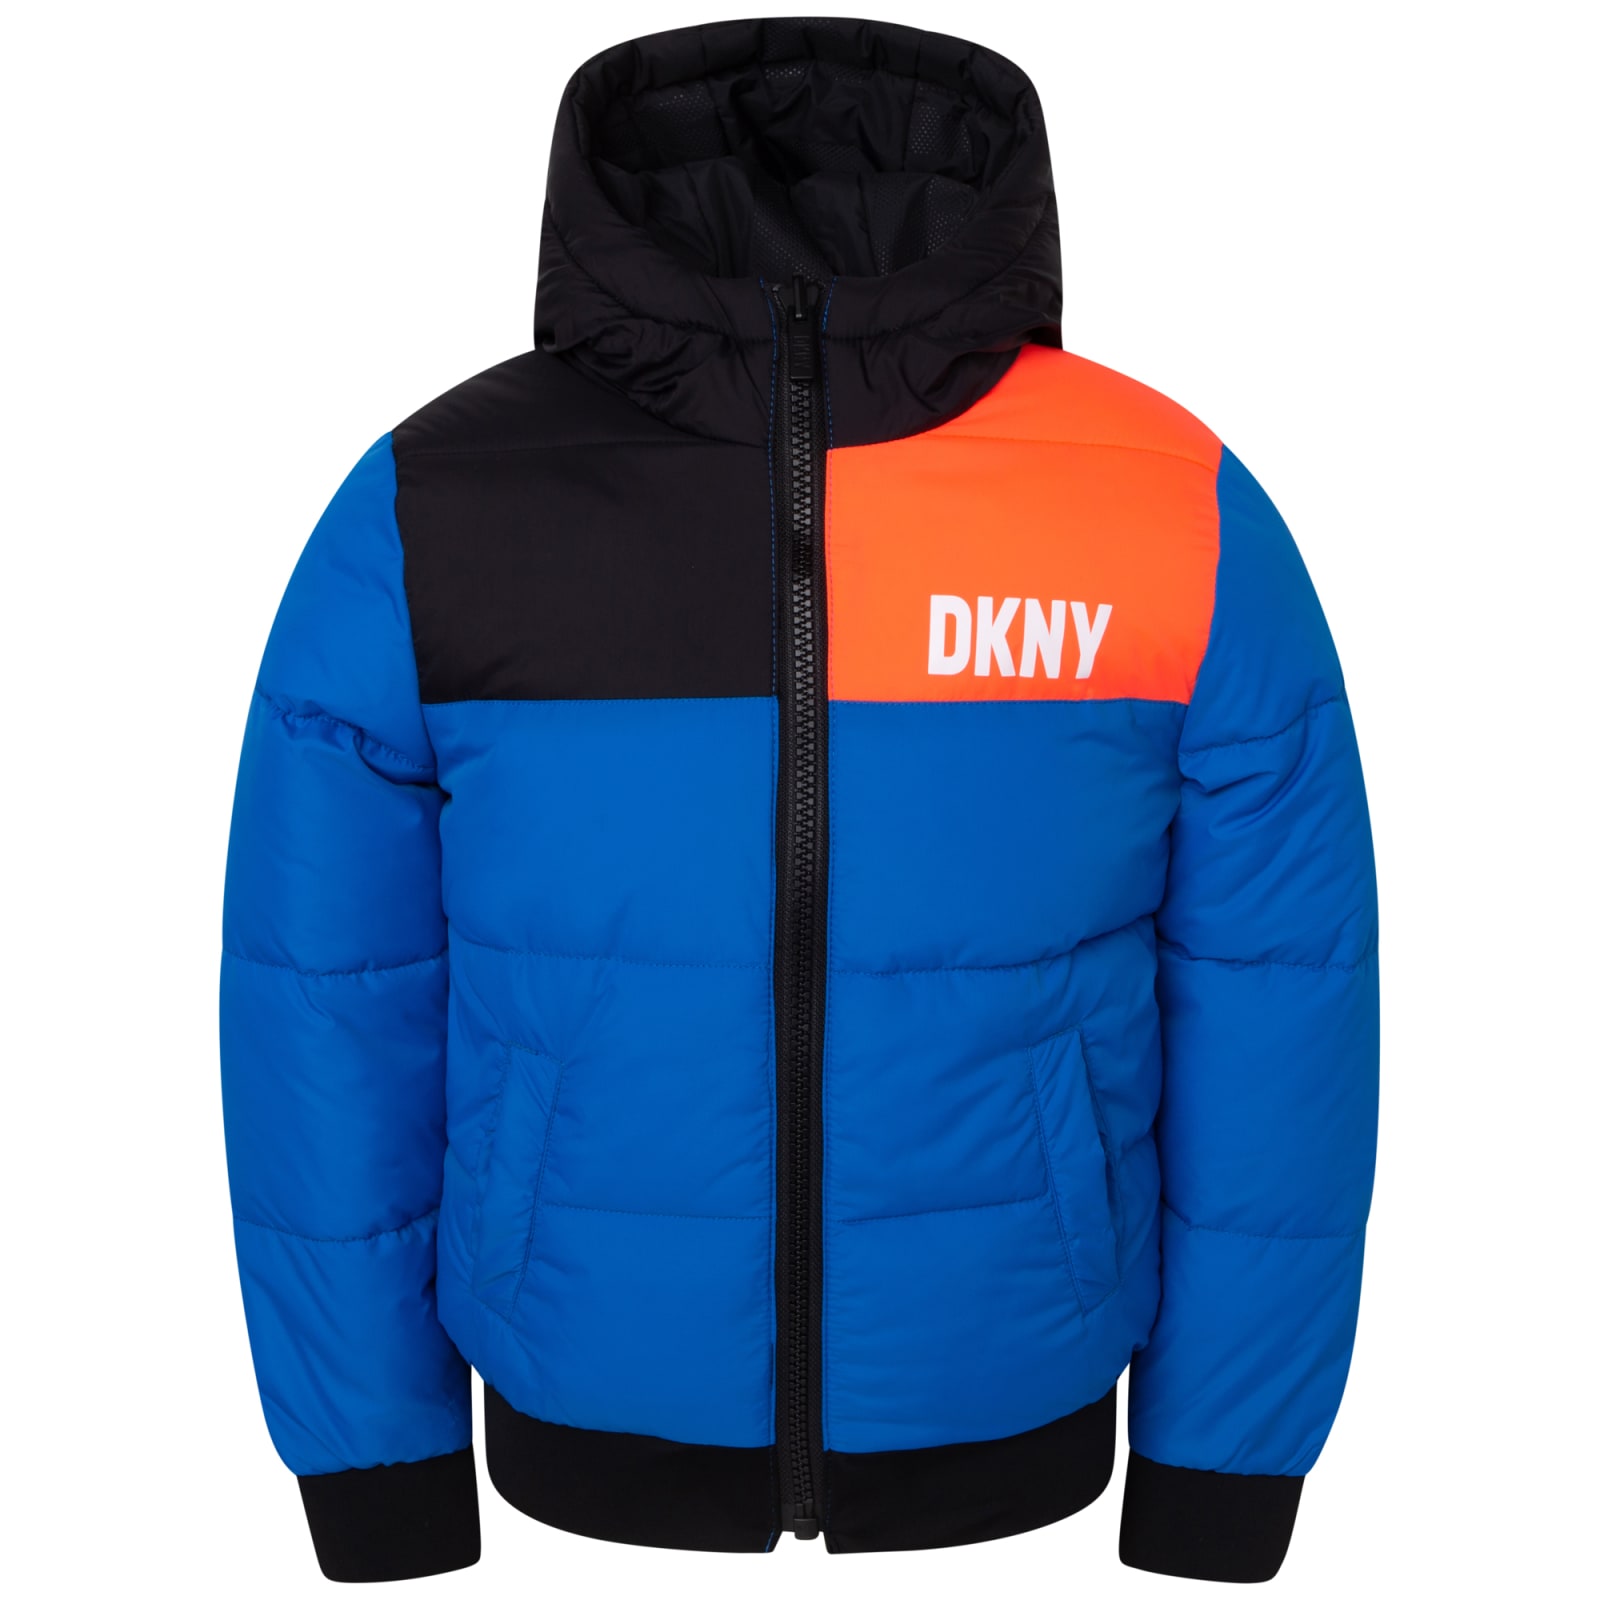 DKNY Reversible Jacket